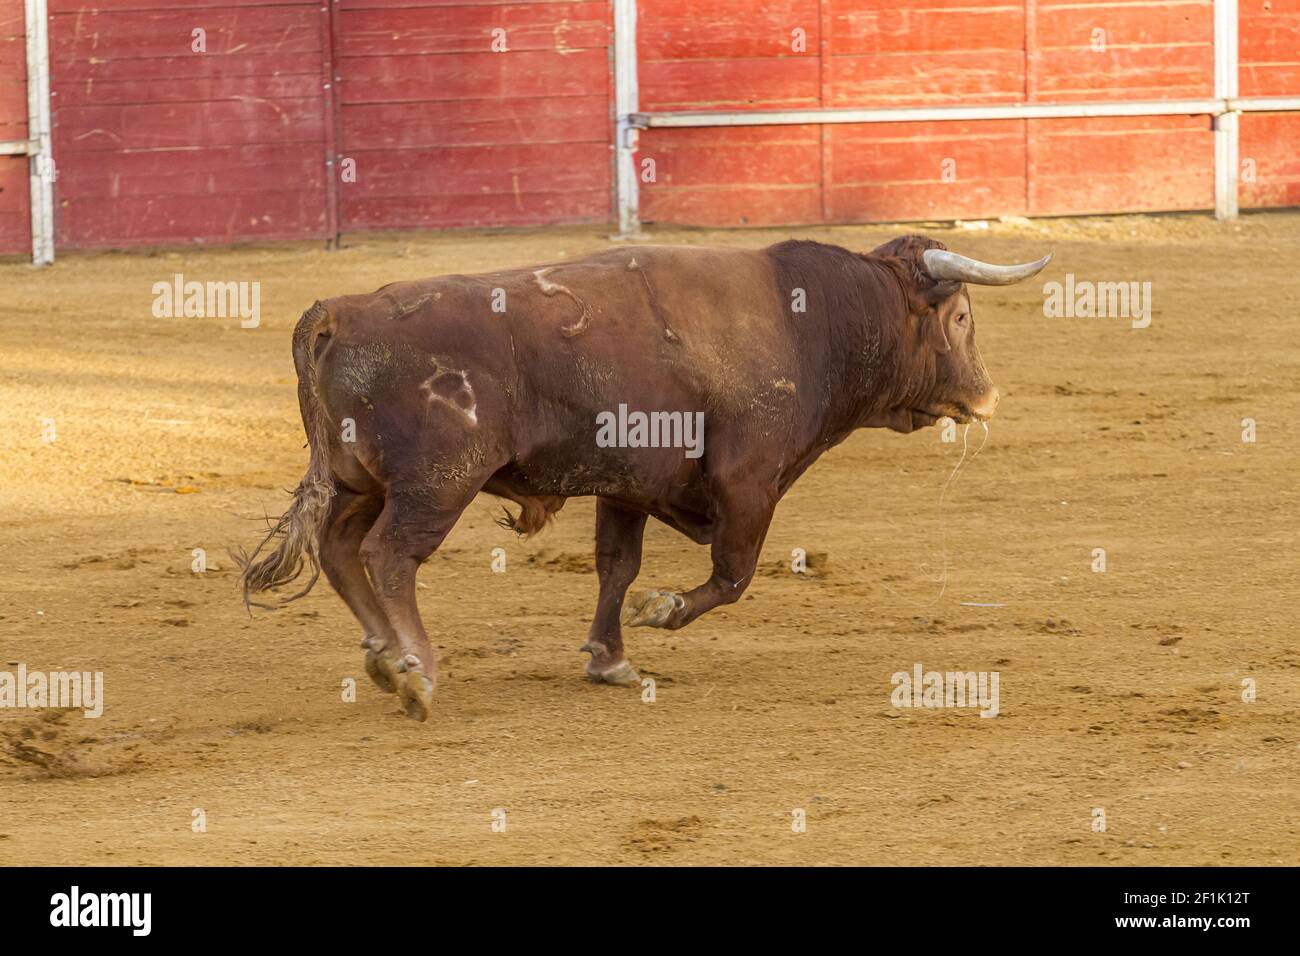 Corrida divertissement corrida, brave taureau espagnol dans un arène. L'animal est brun et a des cornes très aiguisées Banque D'Images